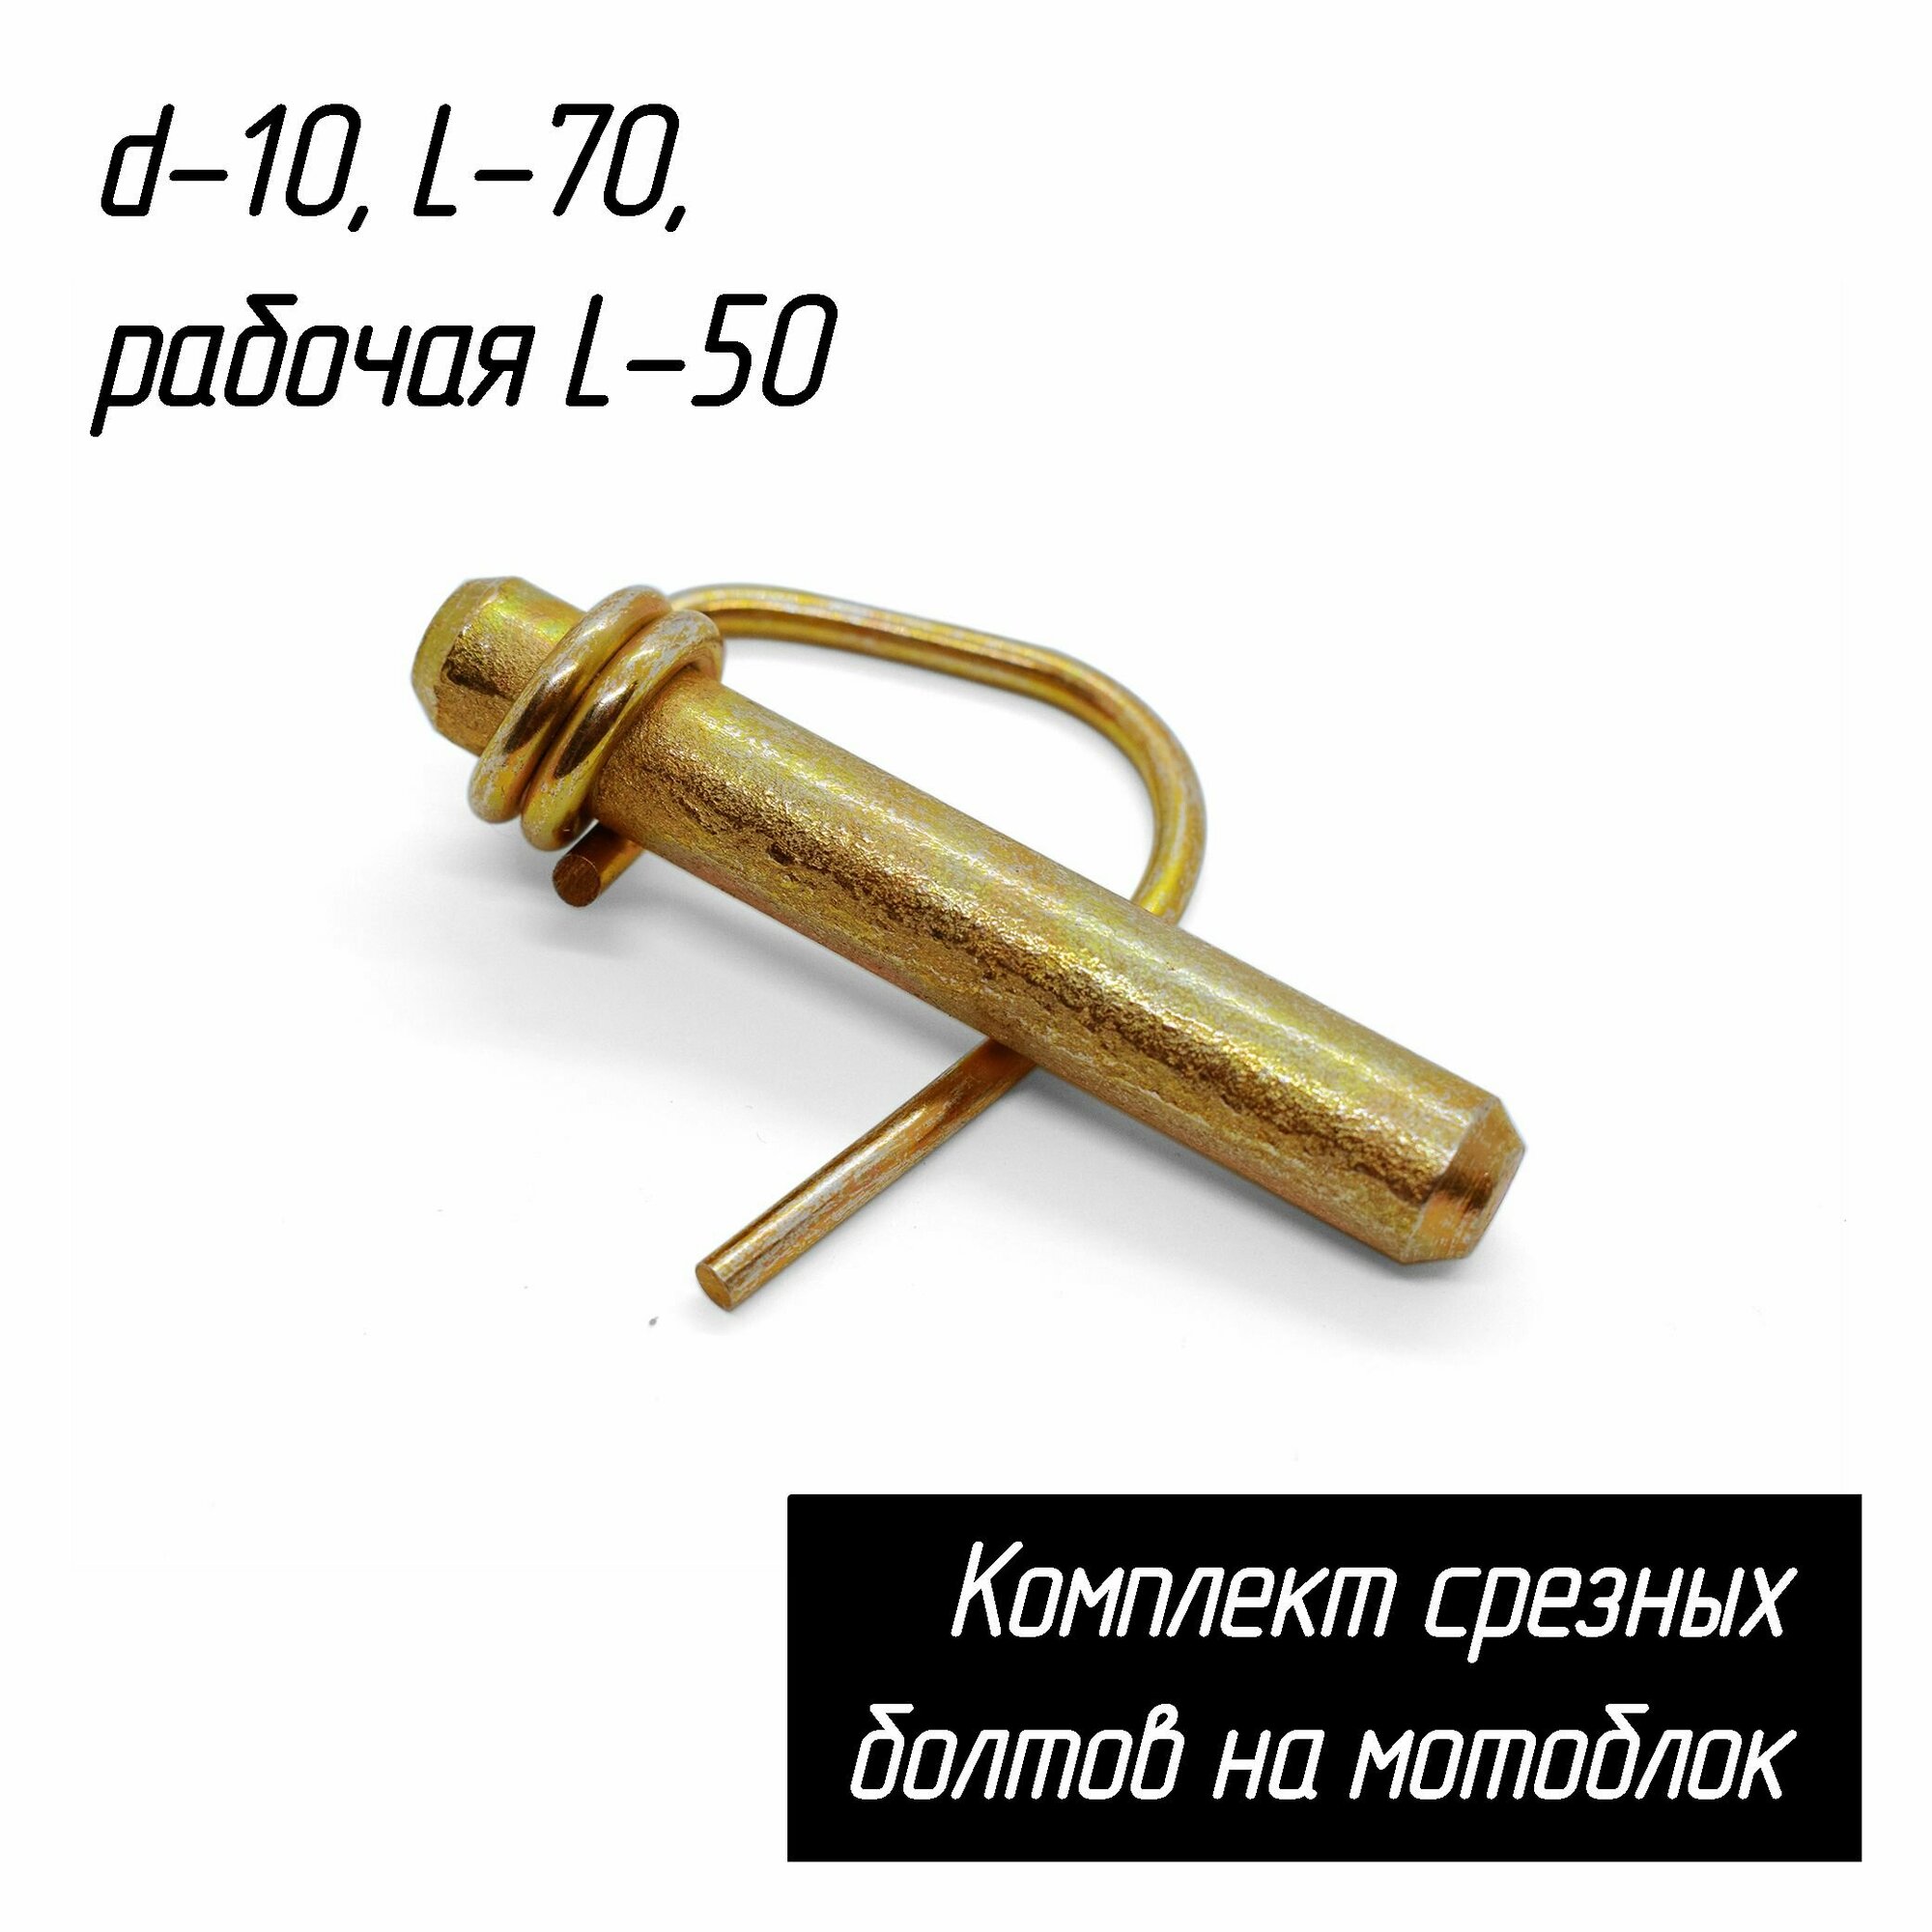 Стопор фрез (срезной болт - палец) для мотоблоков, d-10, L-70, рабочая L-50 AEZ